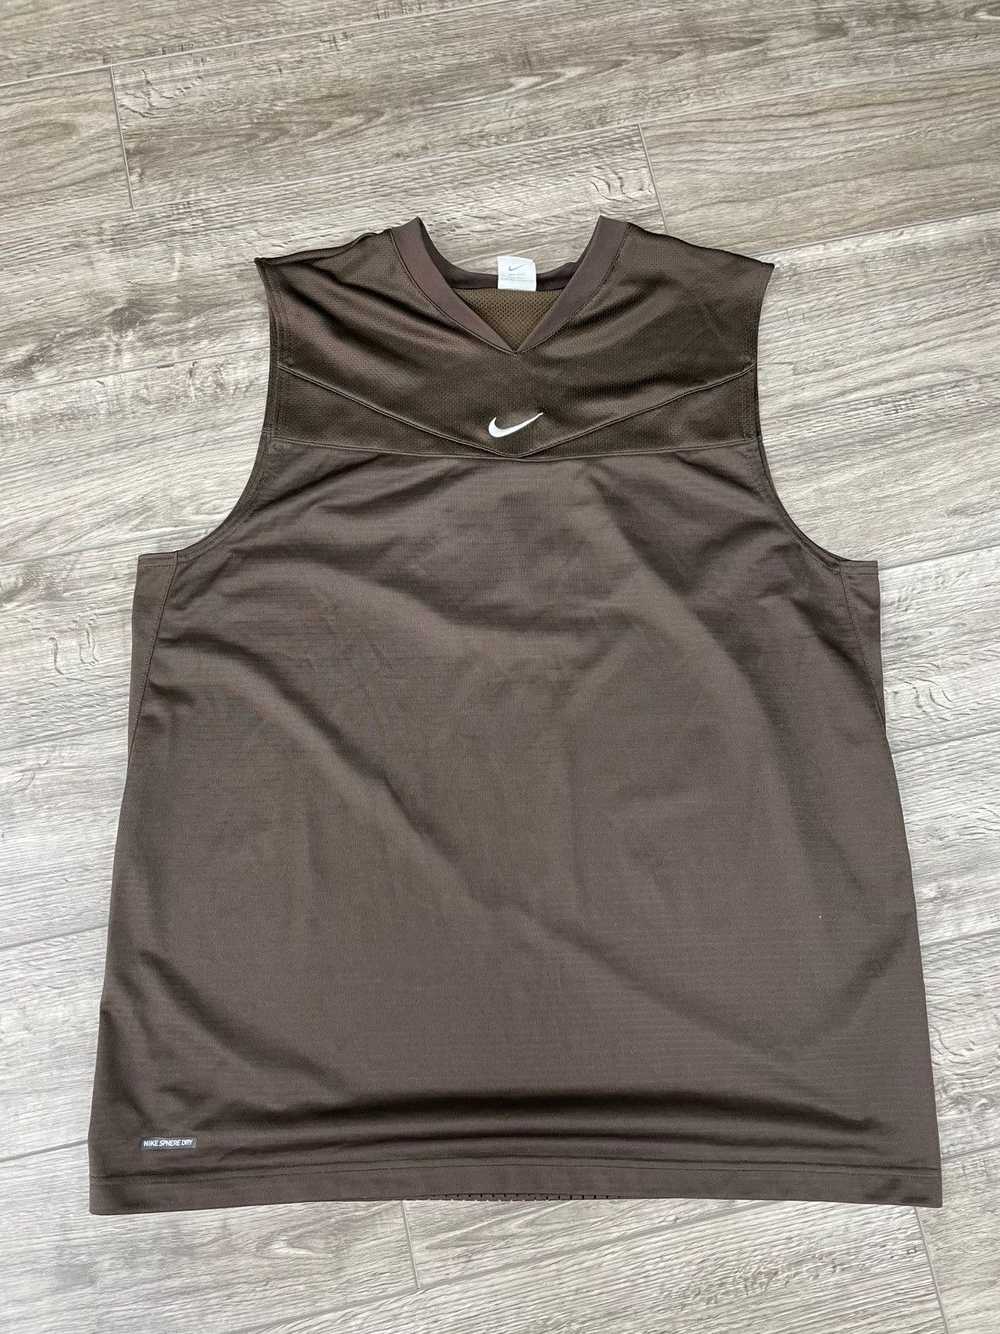 Kobe Mentality × Nike Kobe Brown Nike Sleeves Siz… - image 1